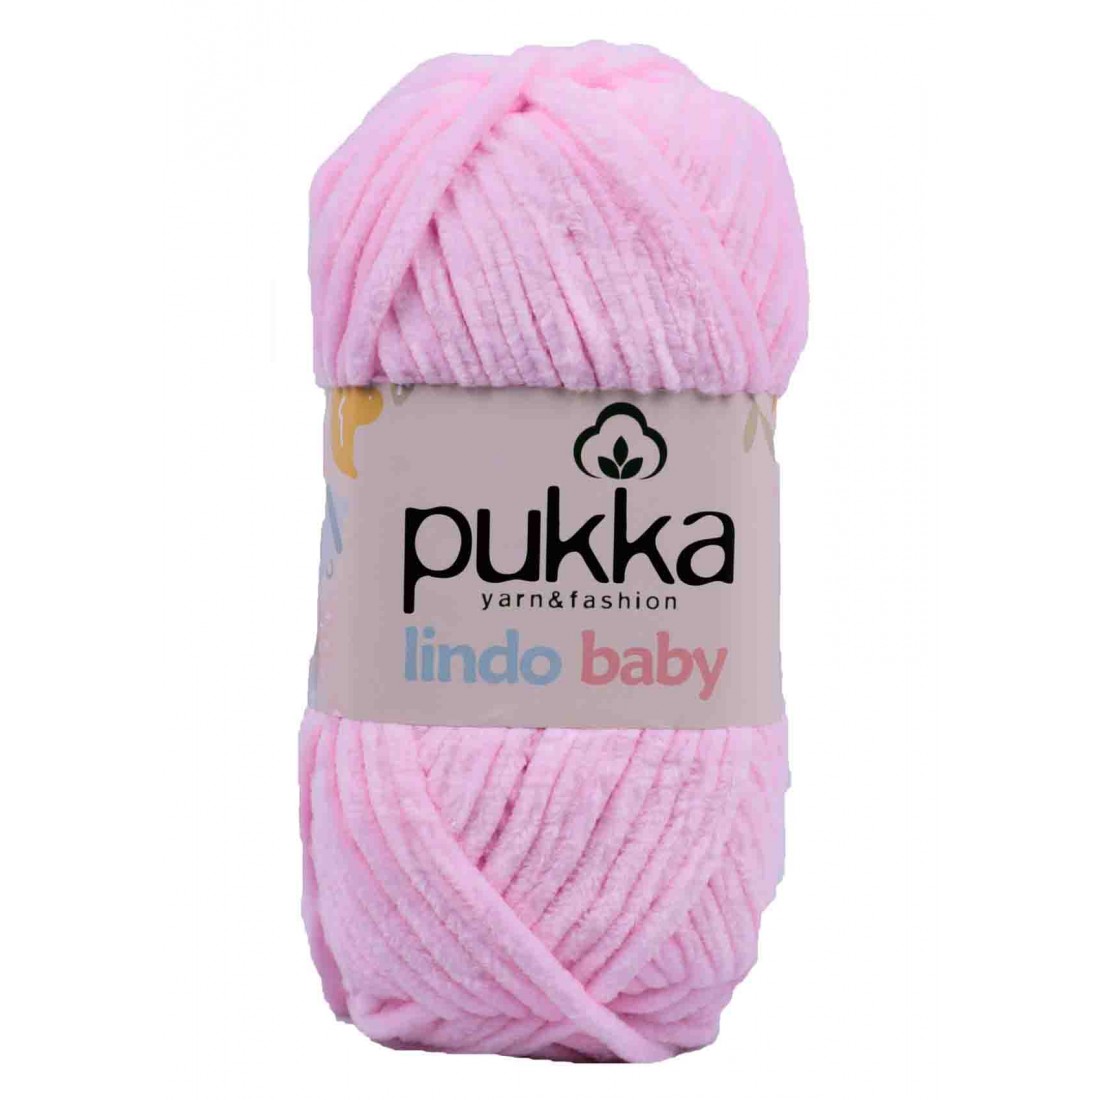 PUKKA Lindo Baby, 100g,70904